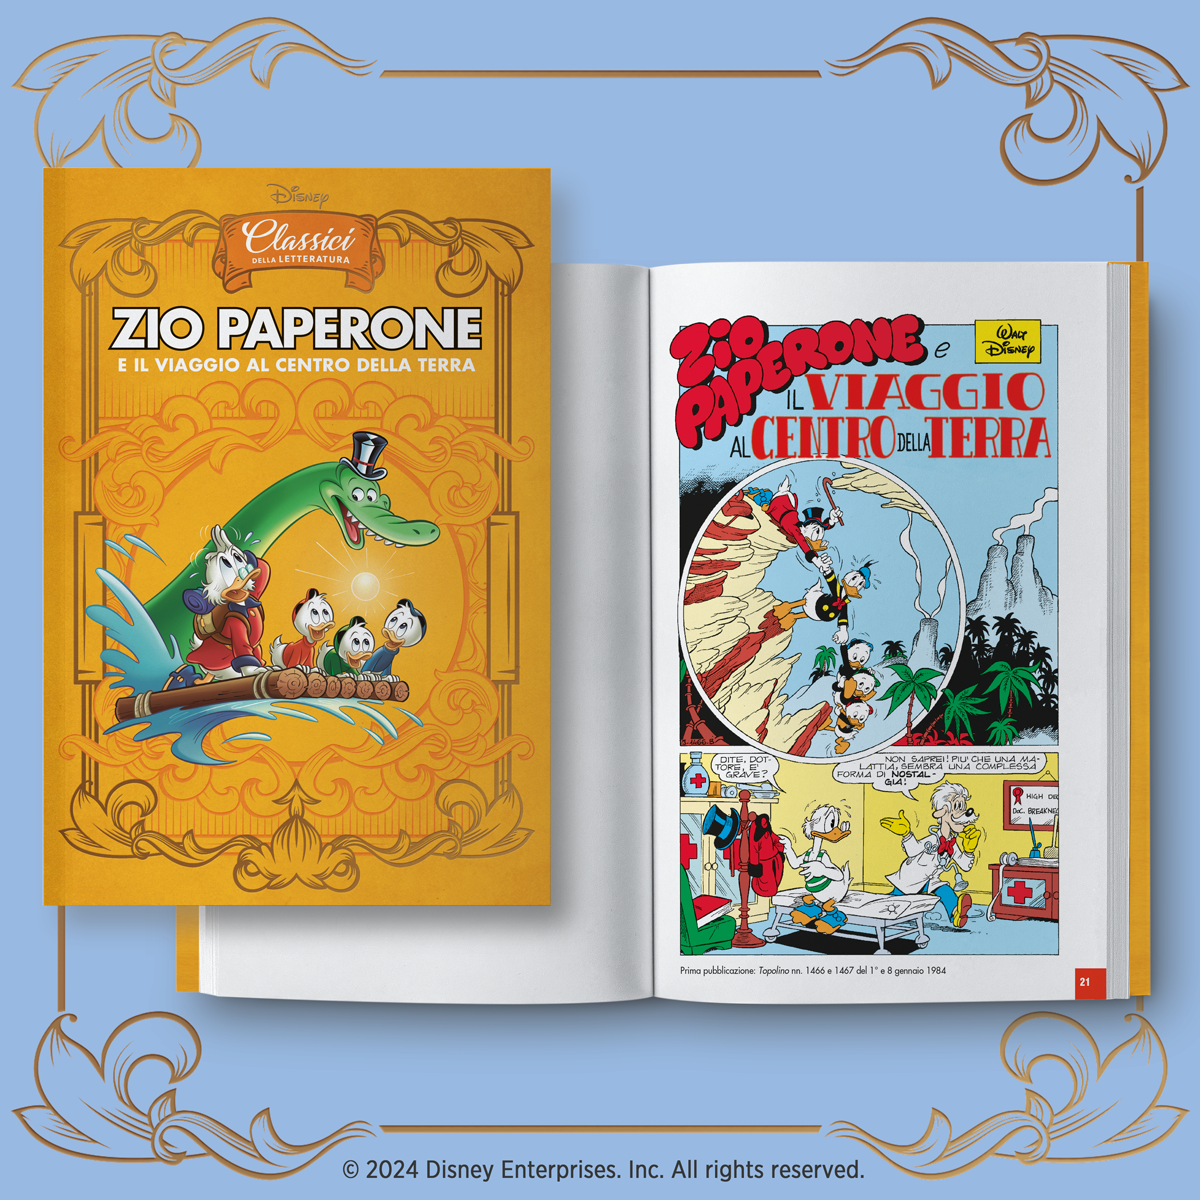 Classici della Letteratura Disney – RBA Italia